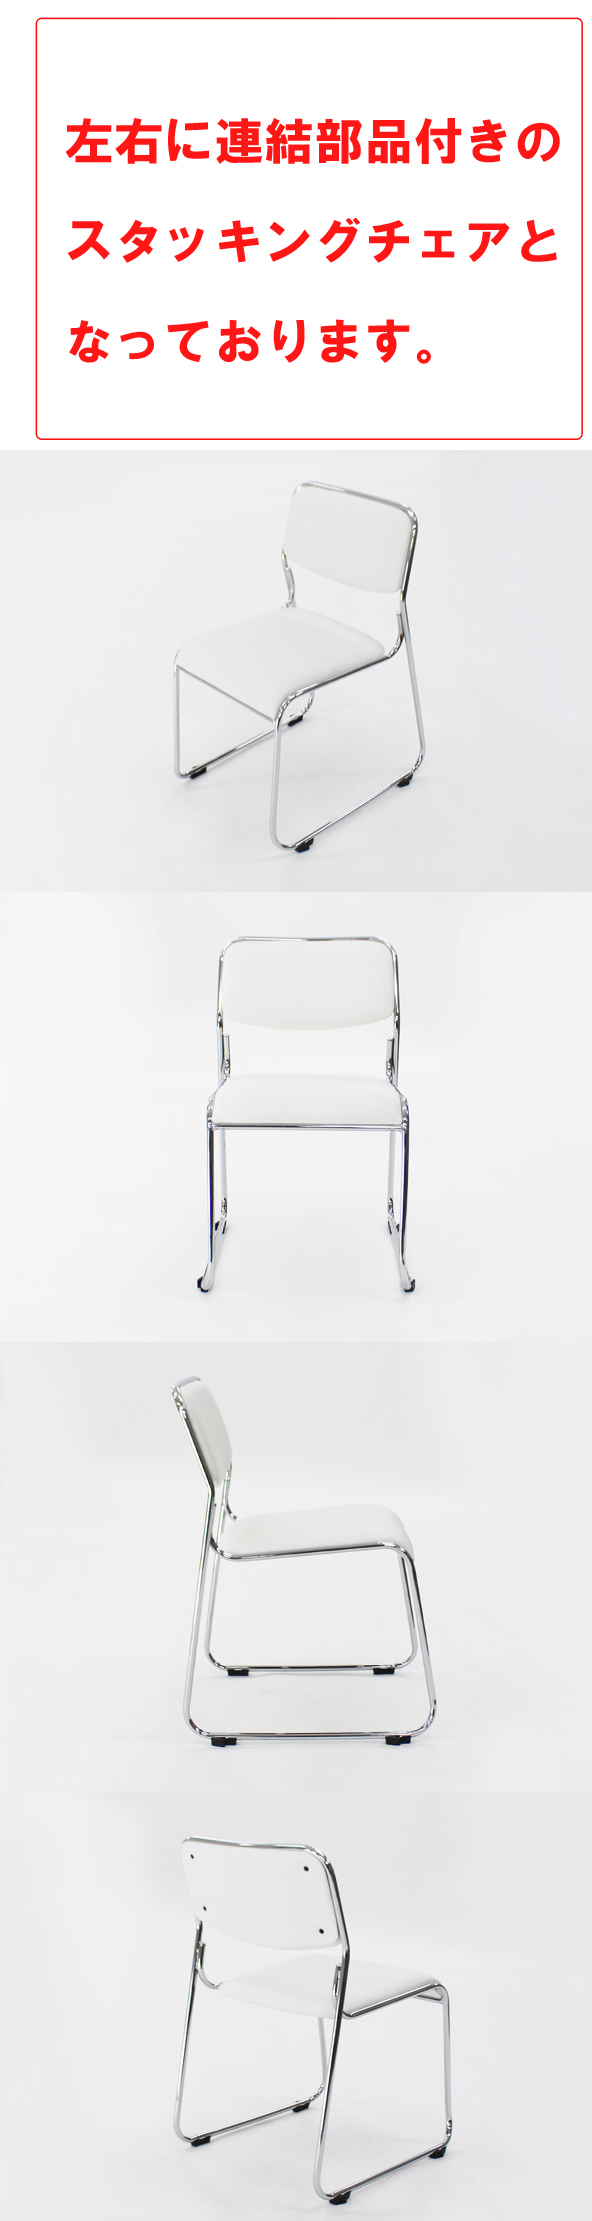 新作限定SALE送料無料 連結可能 スタッキングチェア 3脚セット ホワイト ミーティングチェア パイプ椅子 会議イス 会議椅子 パイプチェア 横連結可能 パイプイス